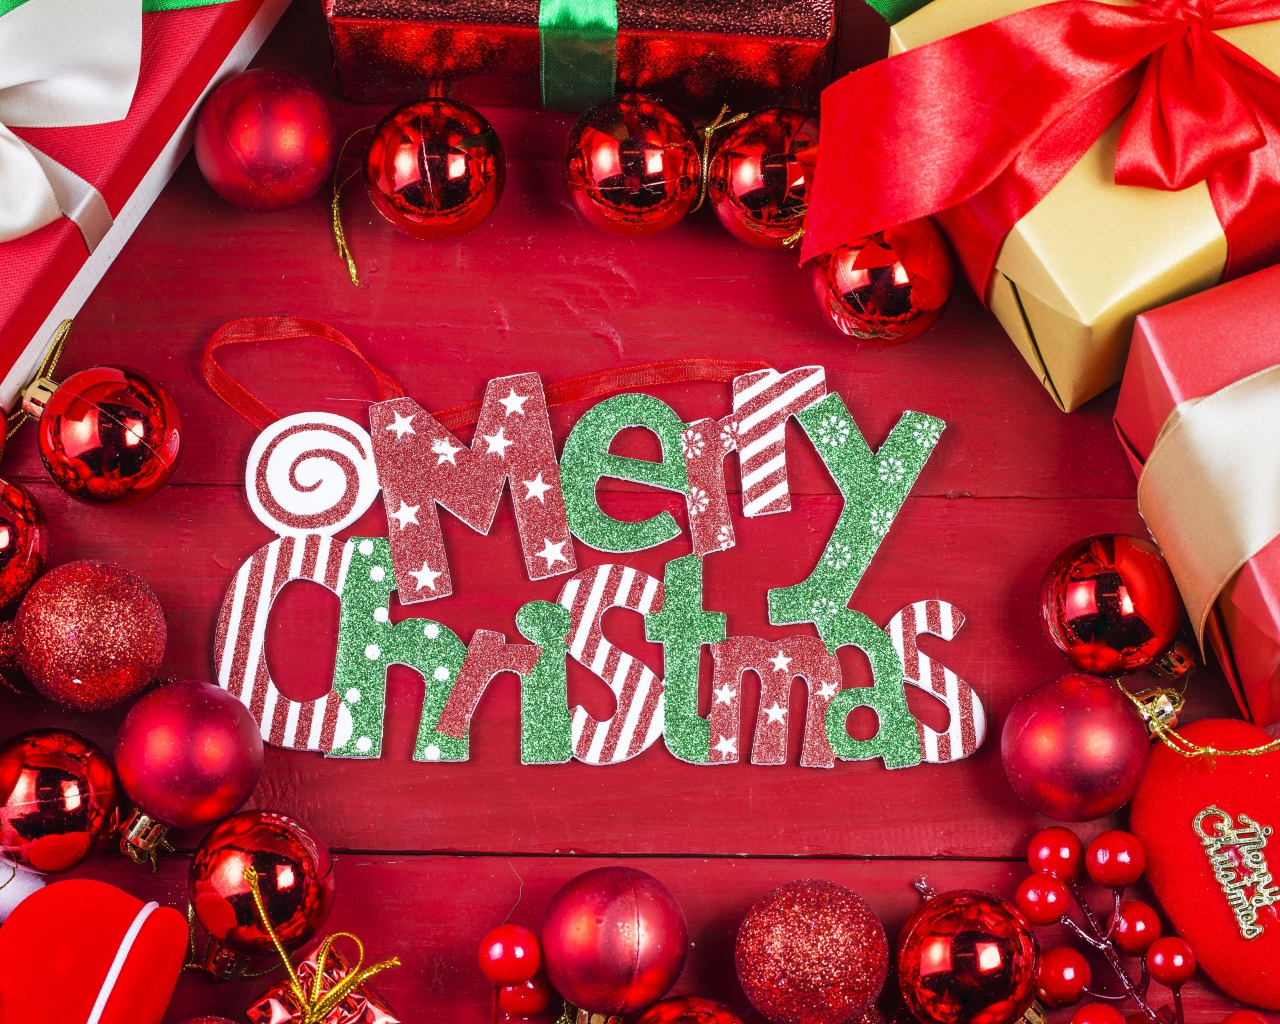 Праздничная надпись Merry Christmas на красном фоне с игрушками и подарками